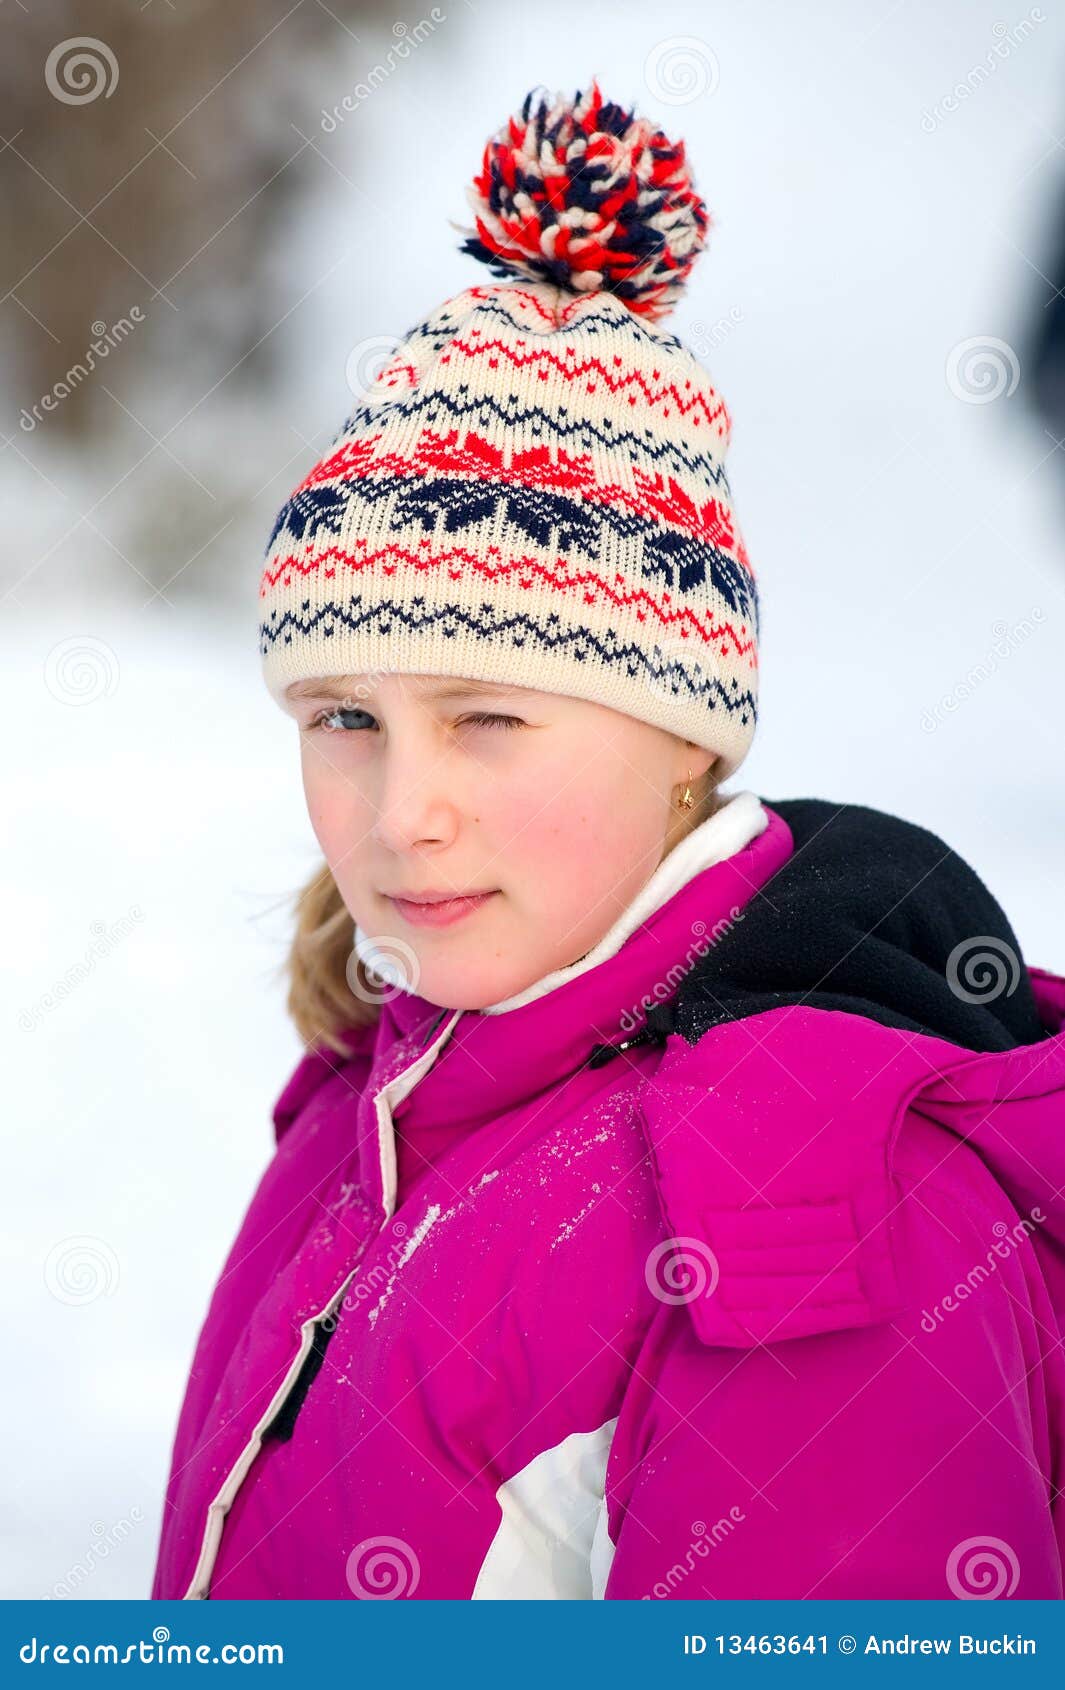 Girlie in snow stock image. Image of seasonal, happy - 13463641